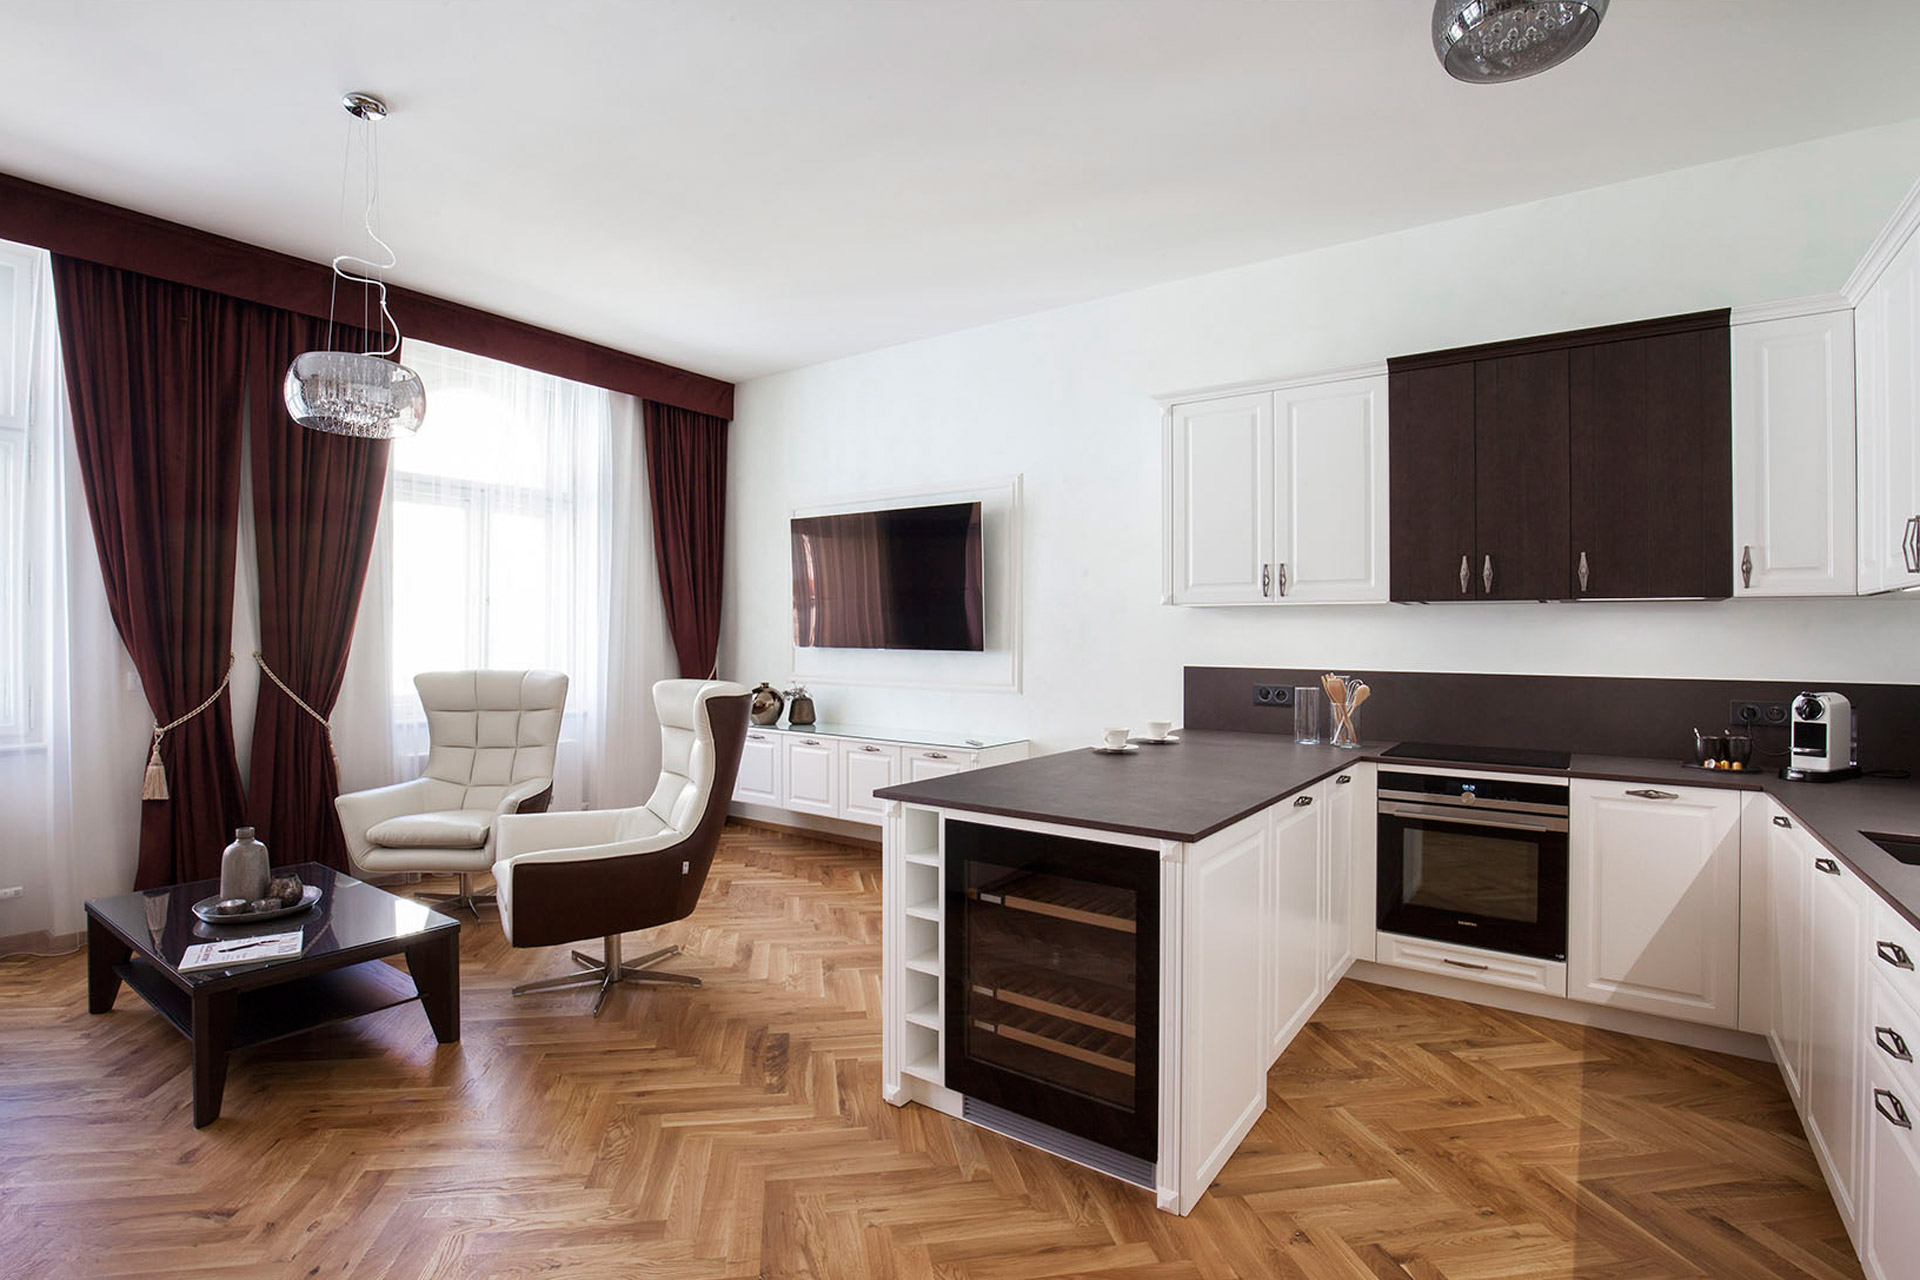 Hanák nábytok Realizácia Kompletný interiér Kuchyňa a obývačka